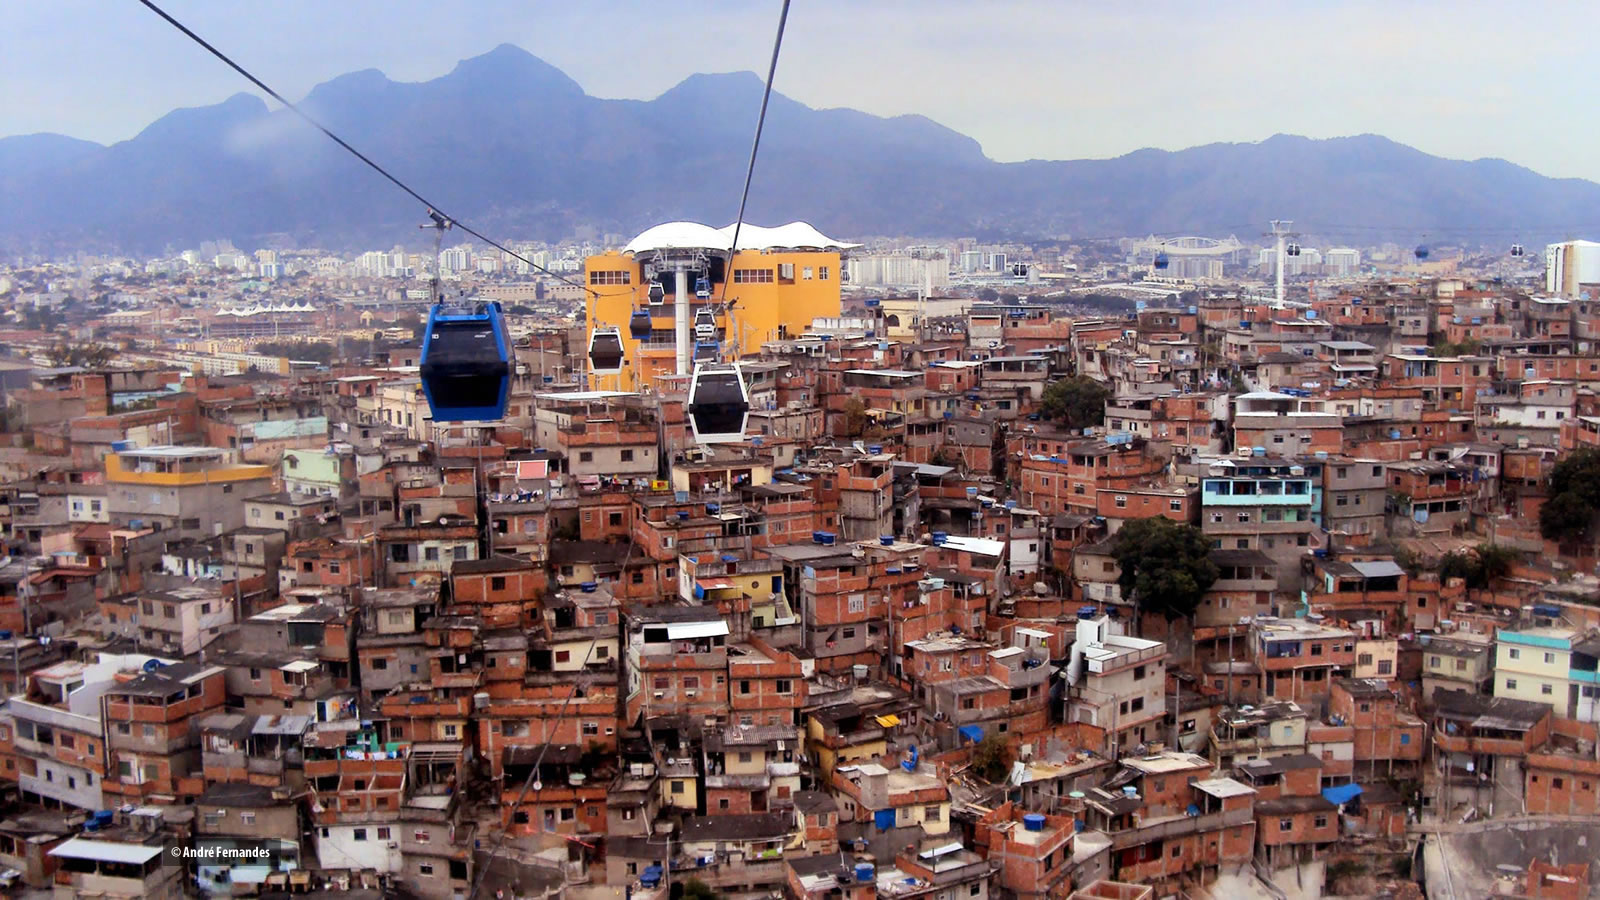 Rio Favelasında Coworking Space Açıldı